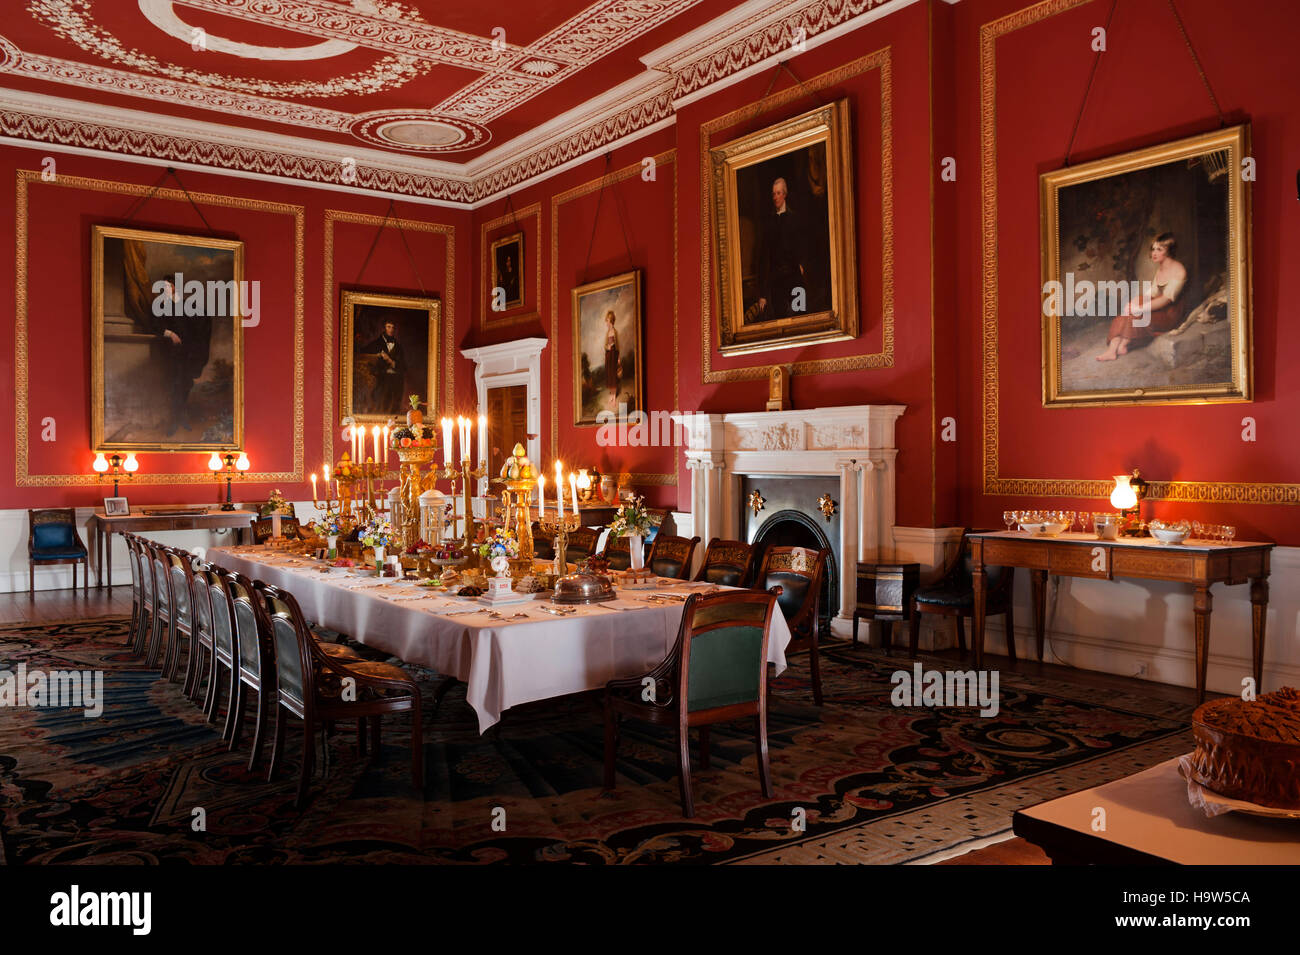 Der Speisesaal im Attingham Park, Shropshire. Das Zimmer wurde von George Steuart in den 1780er Jahren entworfen. Stockfoto